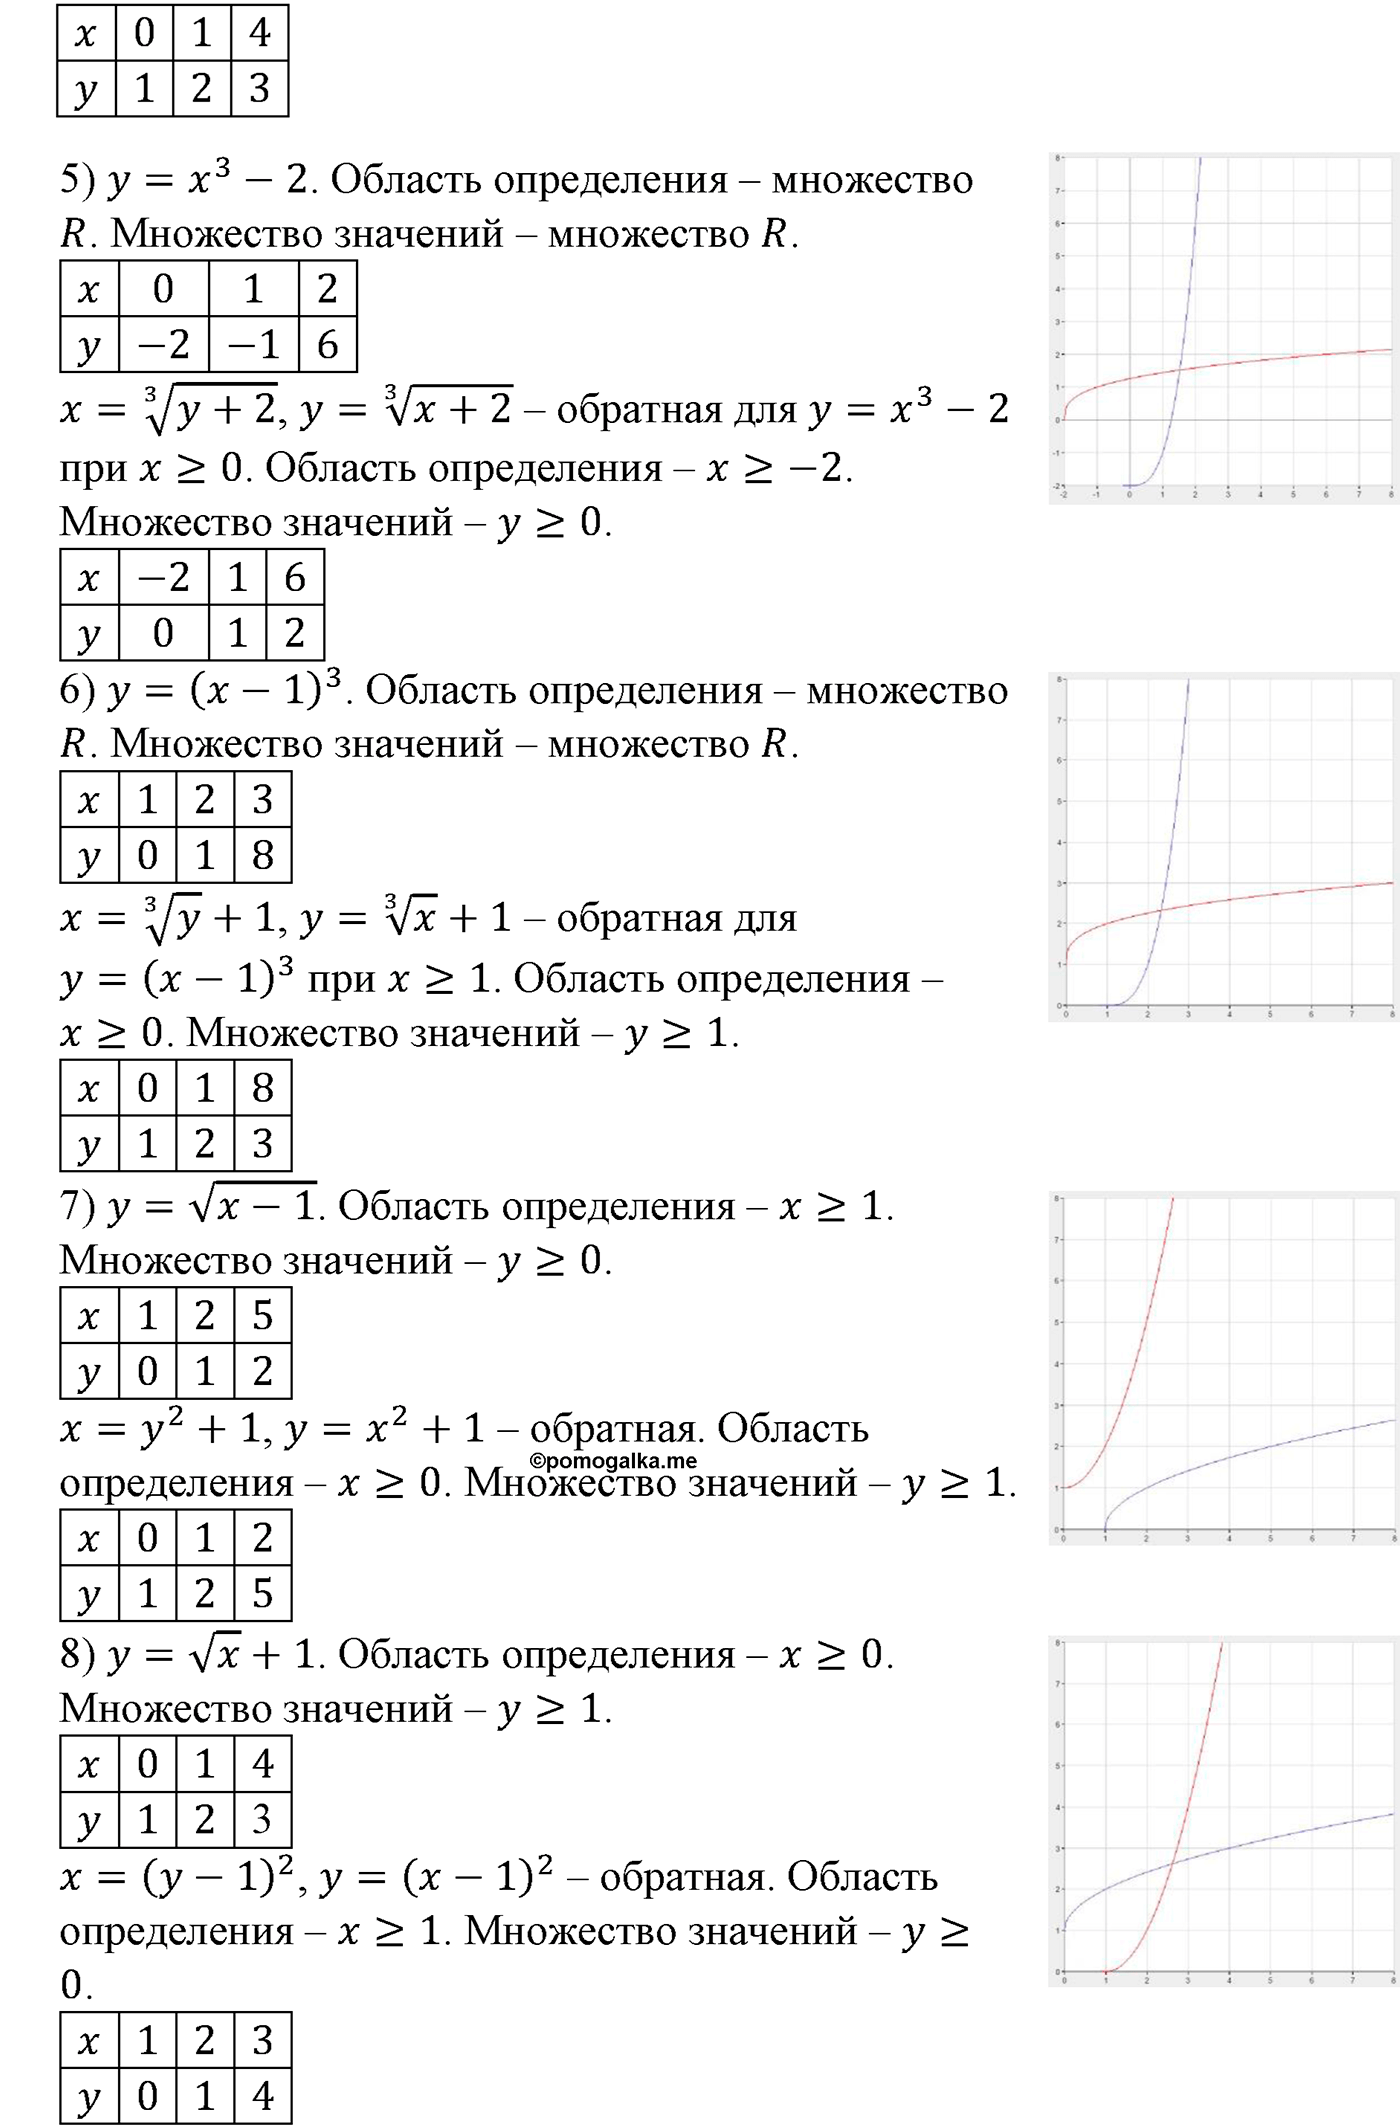 разбор задачи №137 по алгебре за 10-11 класс из учебника Алимова, Колягина